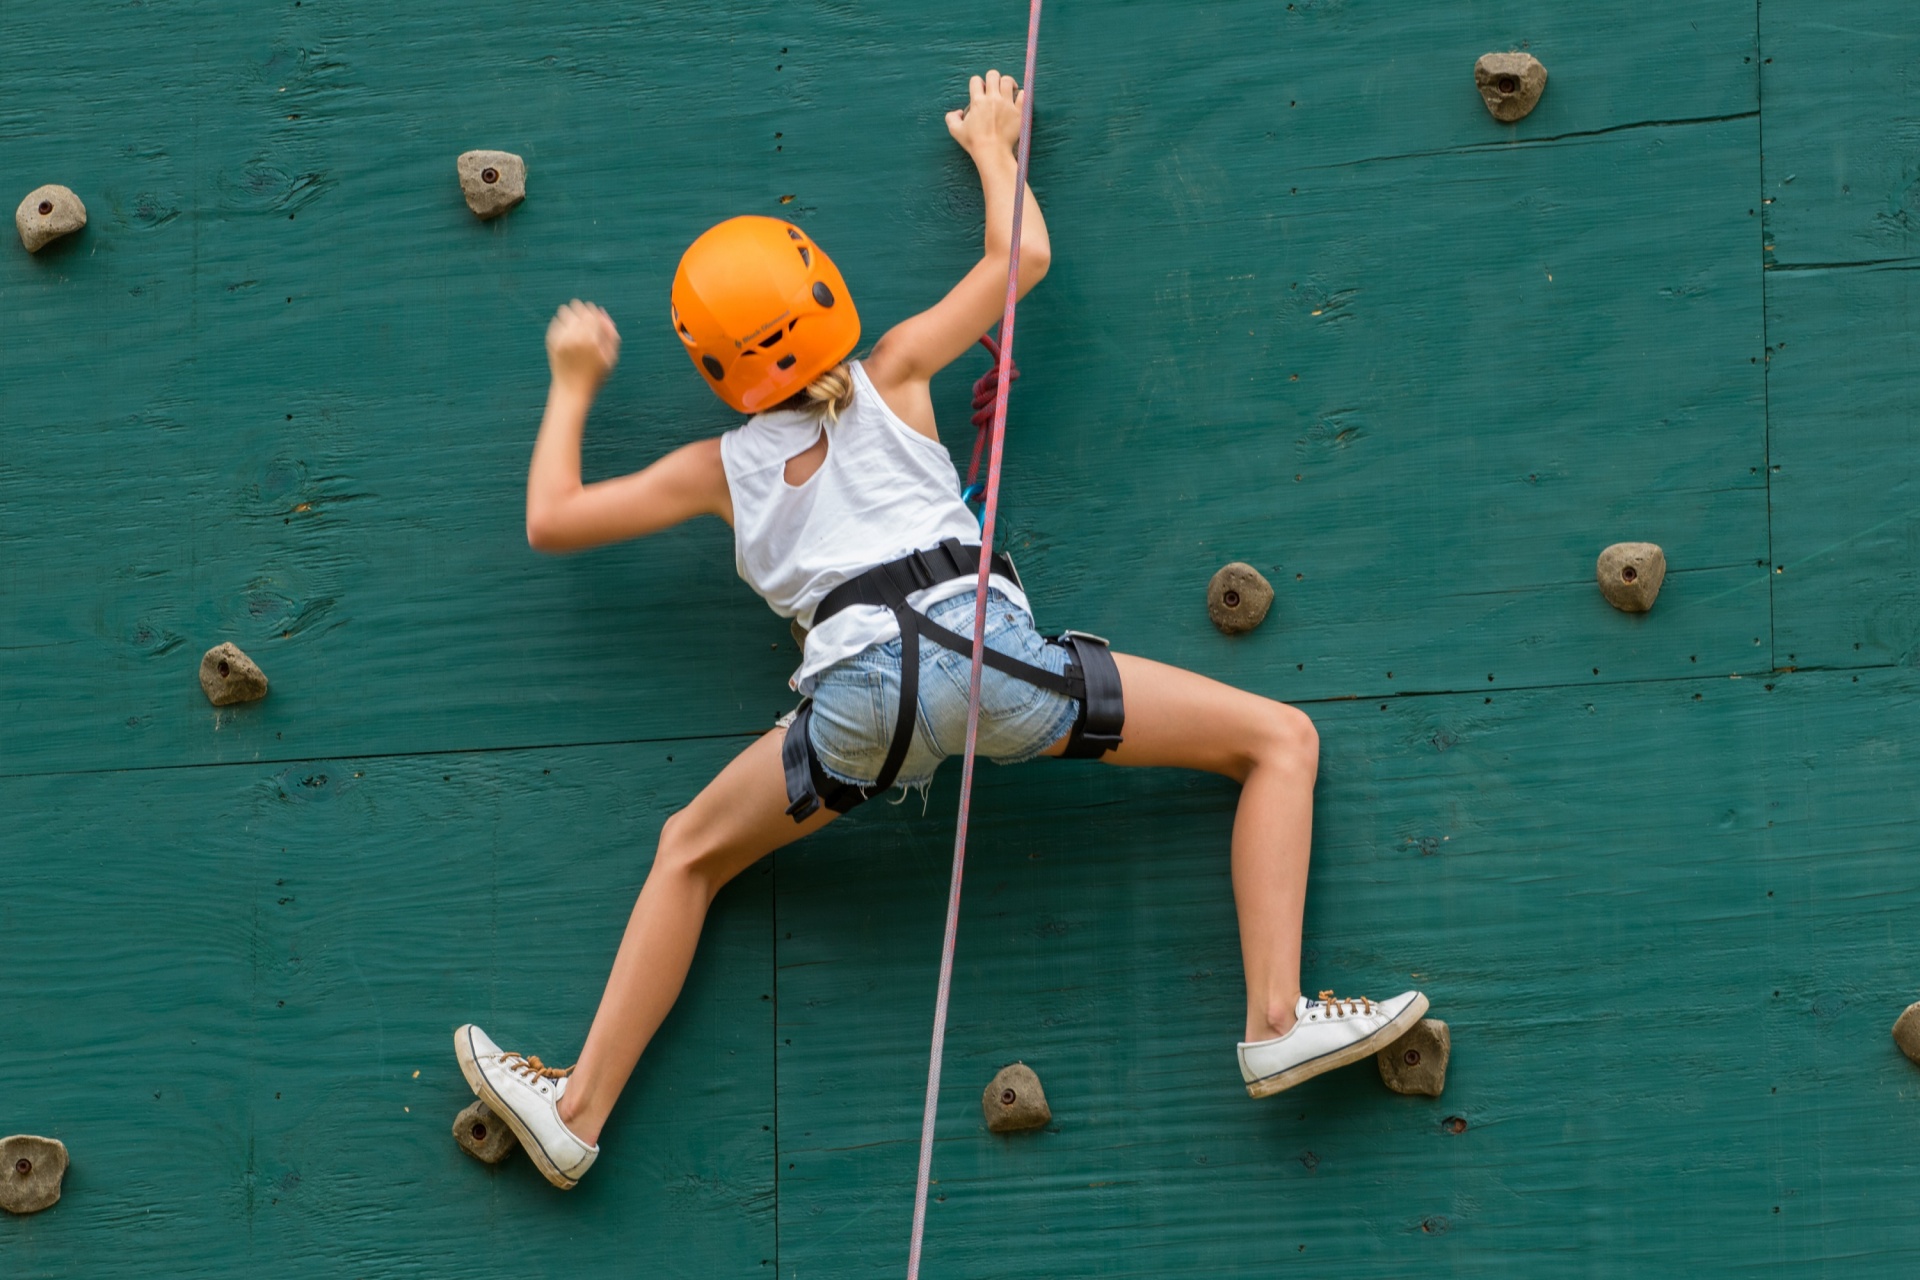 A Lissone corsi di arrampicata per bambini: un'idea per l'estate - MBNews